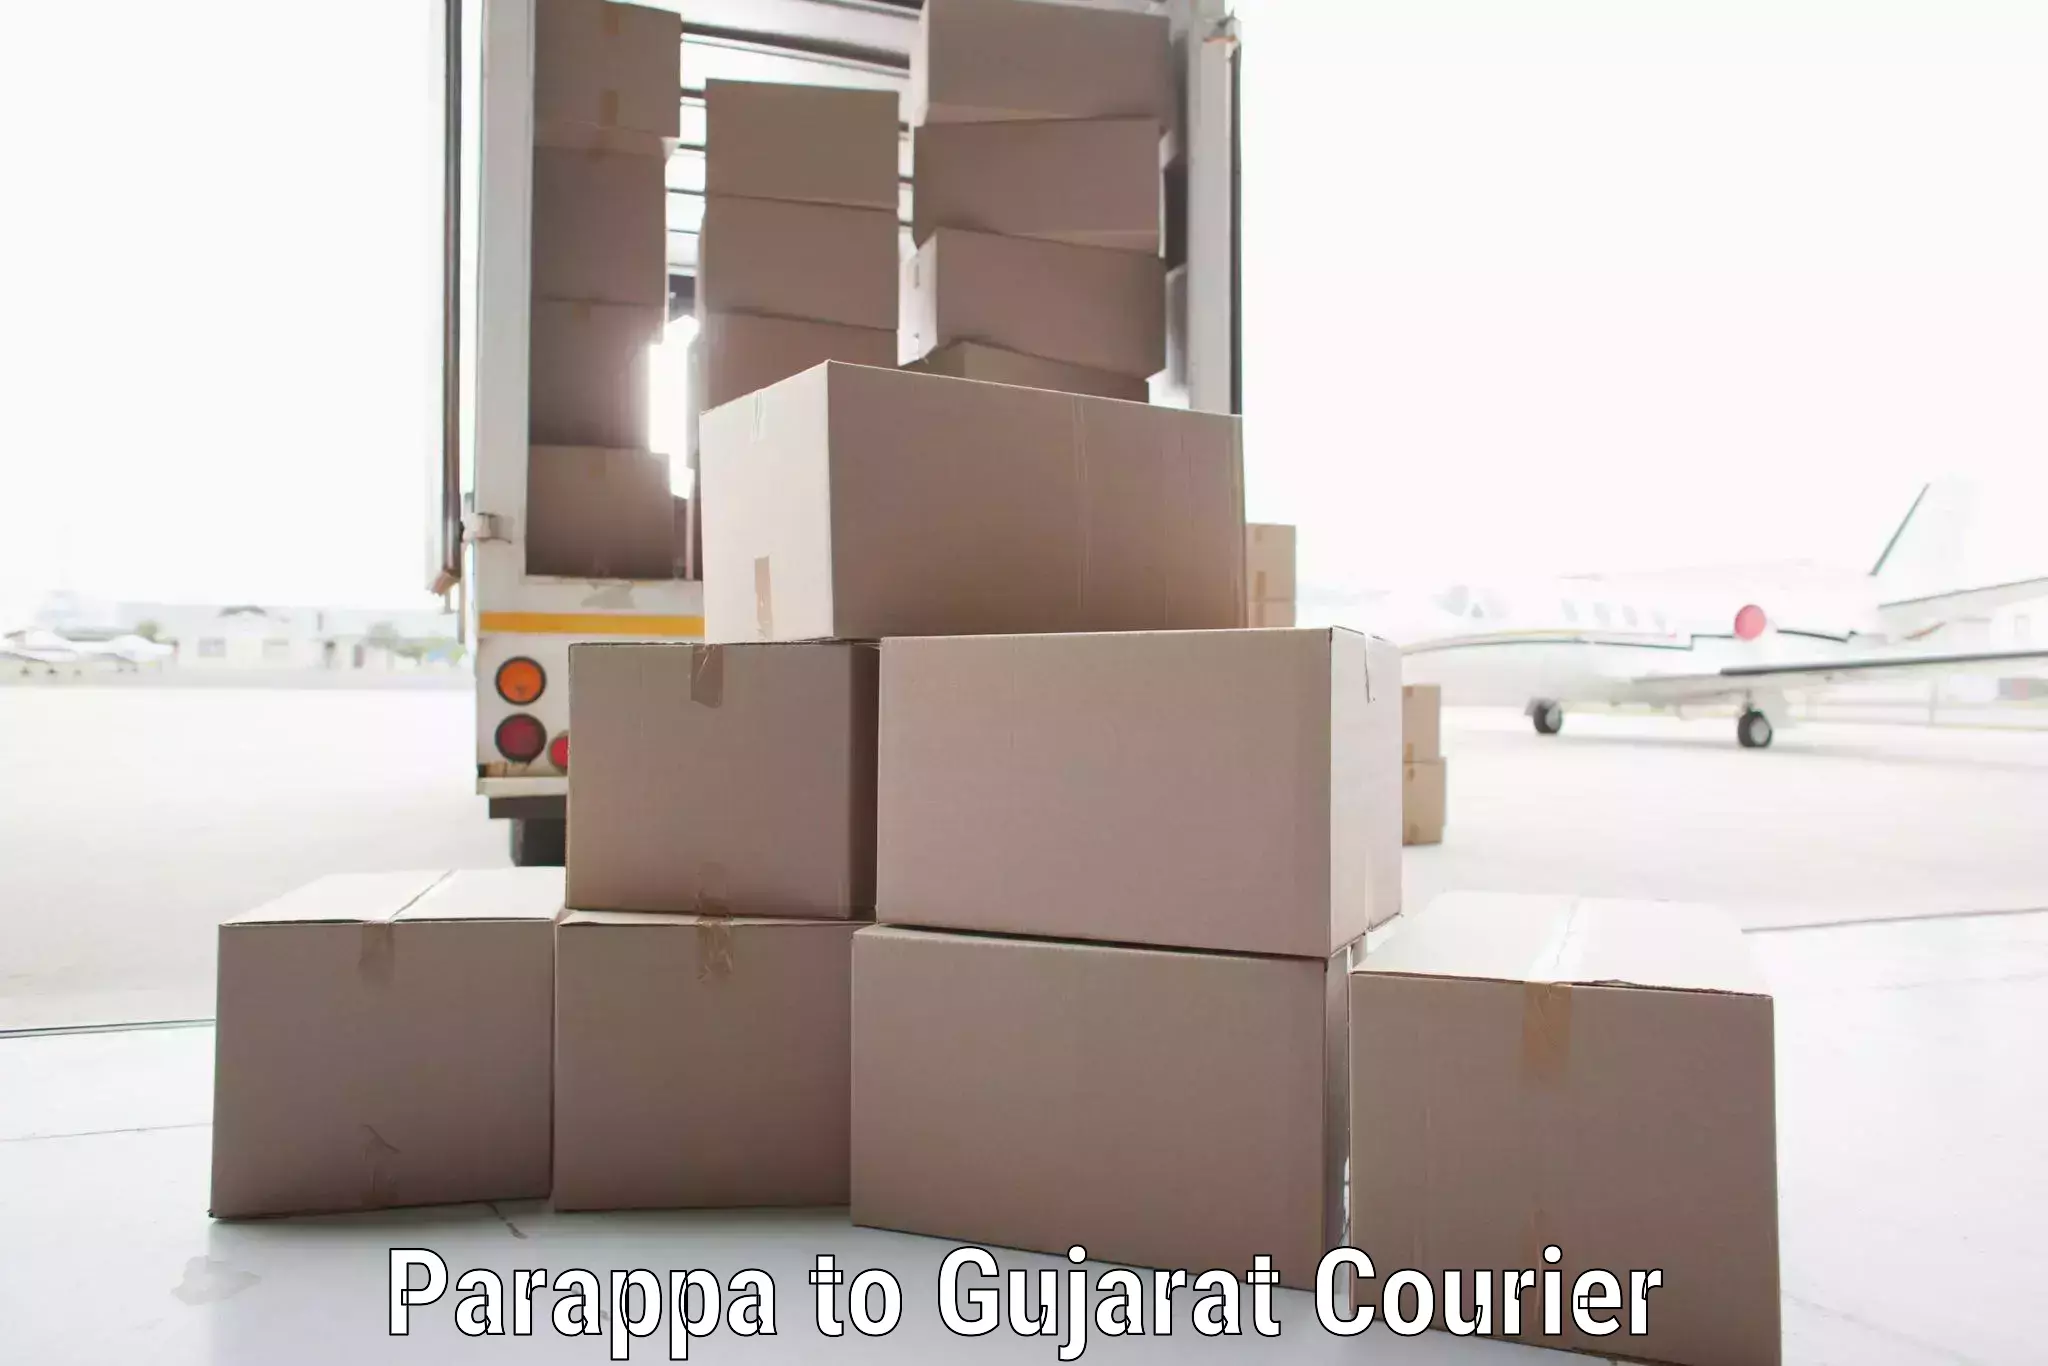 Expedited parcel delivery Parappa to IIIT Vadodara